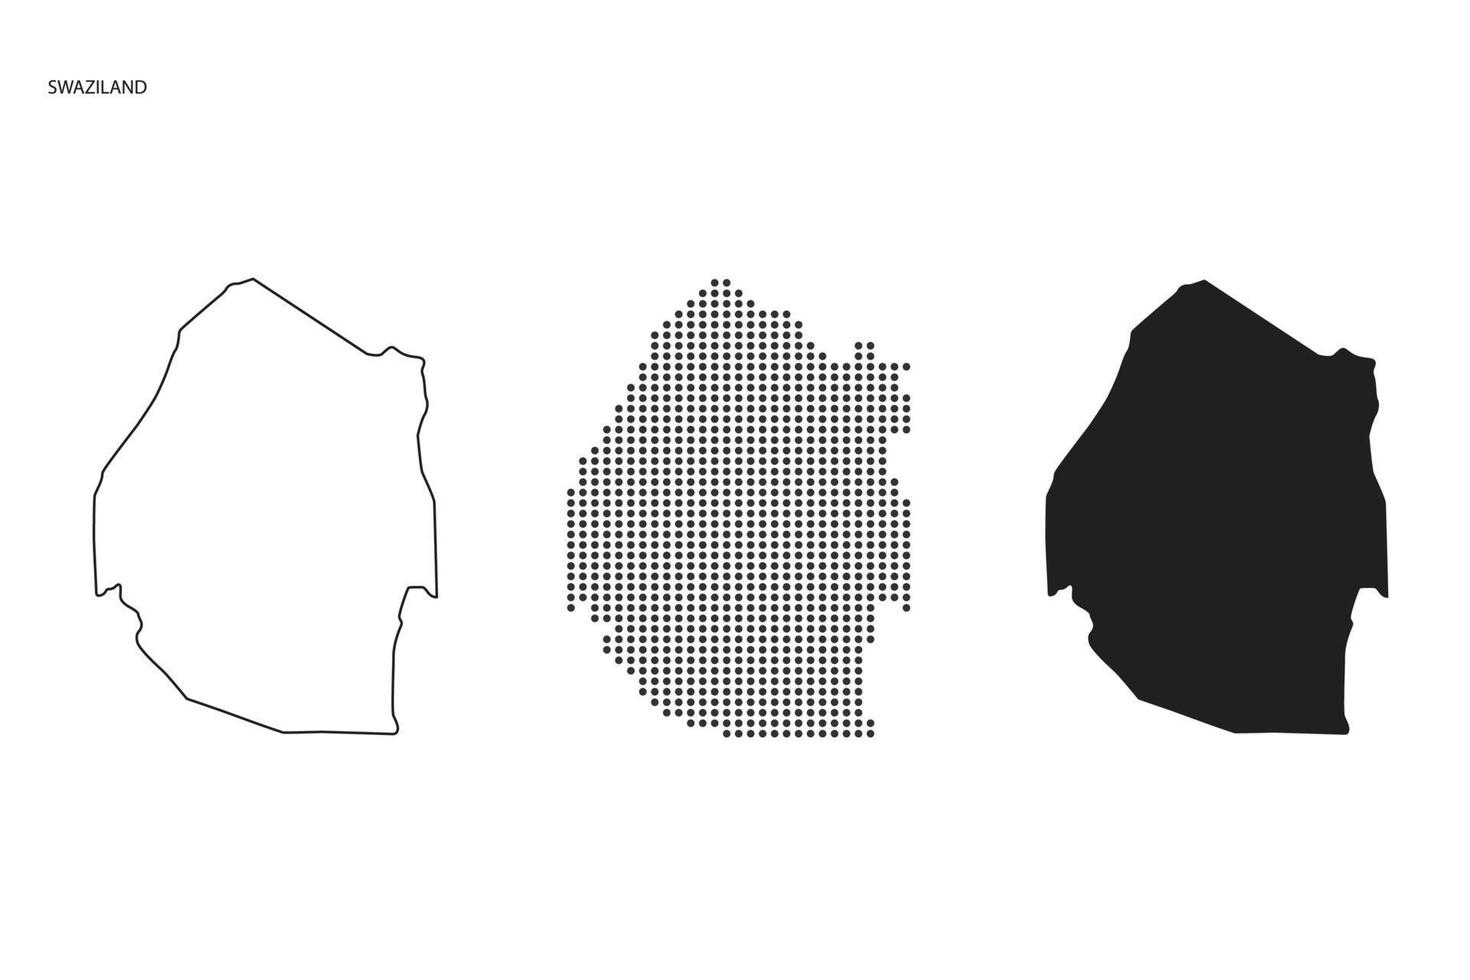 3 Versionen des Swasiland-Kartenstadtvektors durch dünnen schwarzen Umriss-Einfachheitsstil, schwarzen Punktstil und dunklen Schattenstil. alles im weißen Hintergrund. vektor